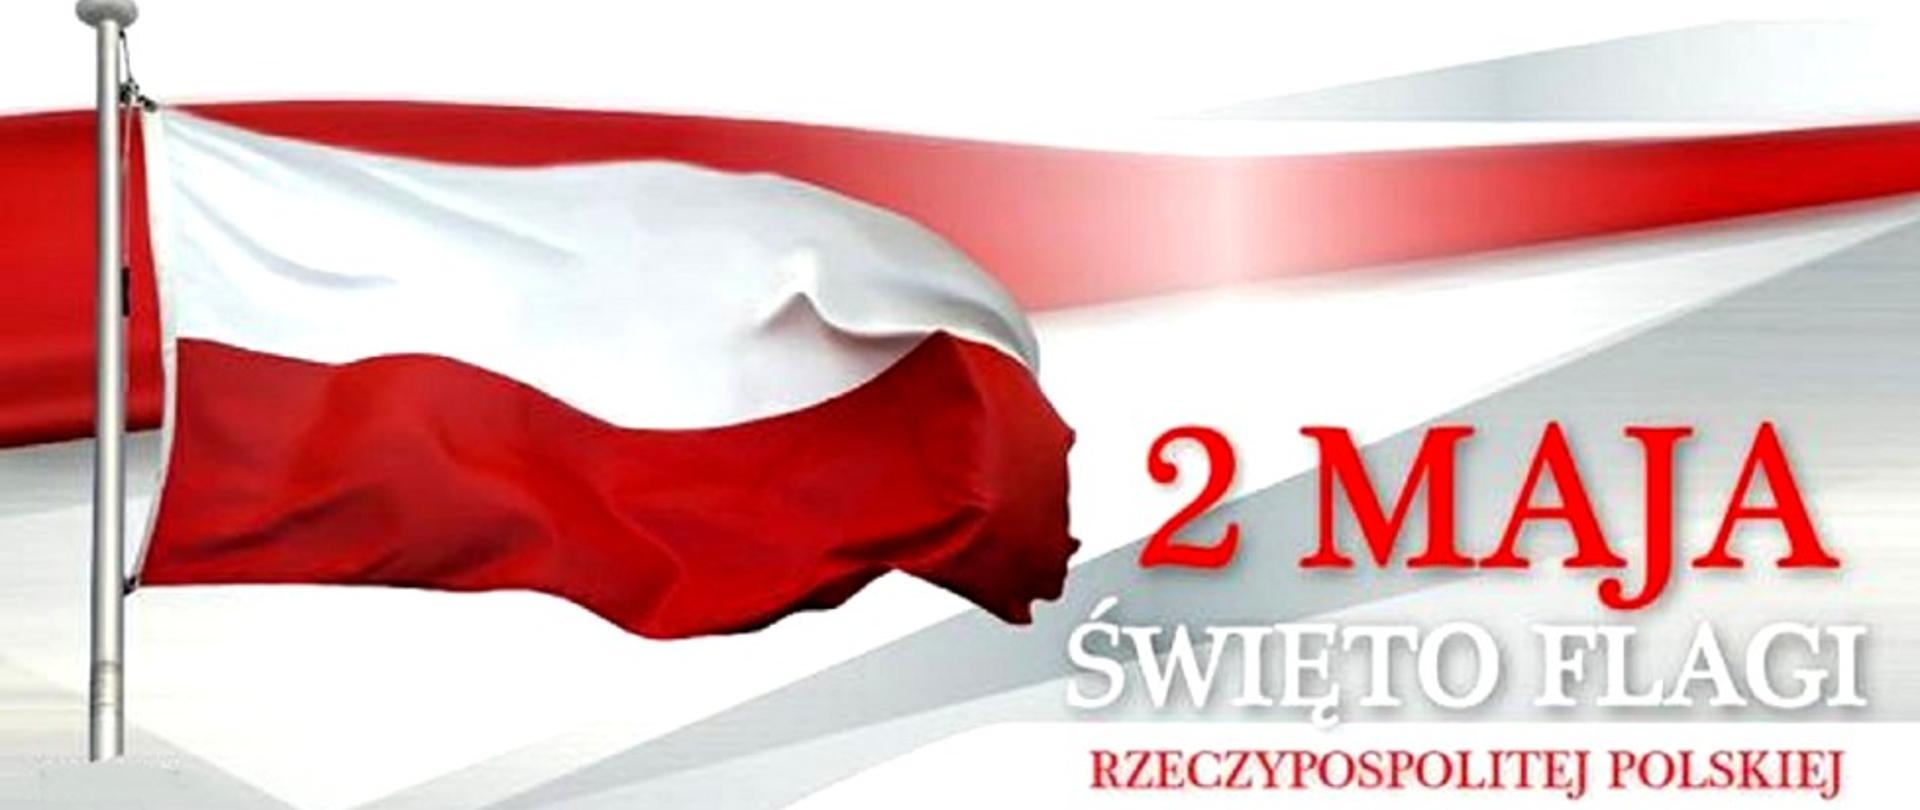 zdjęcie przedstawia biało-czerwoną flagę Polski z napisem 2 maja święto flagi Rzeczypospolitej Polskiej